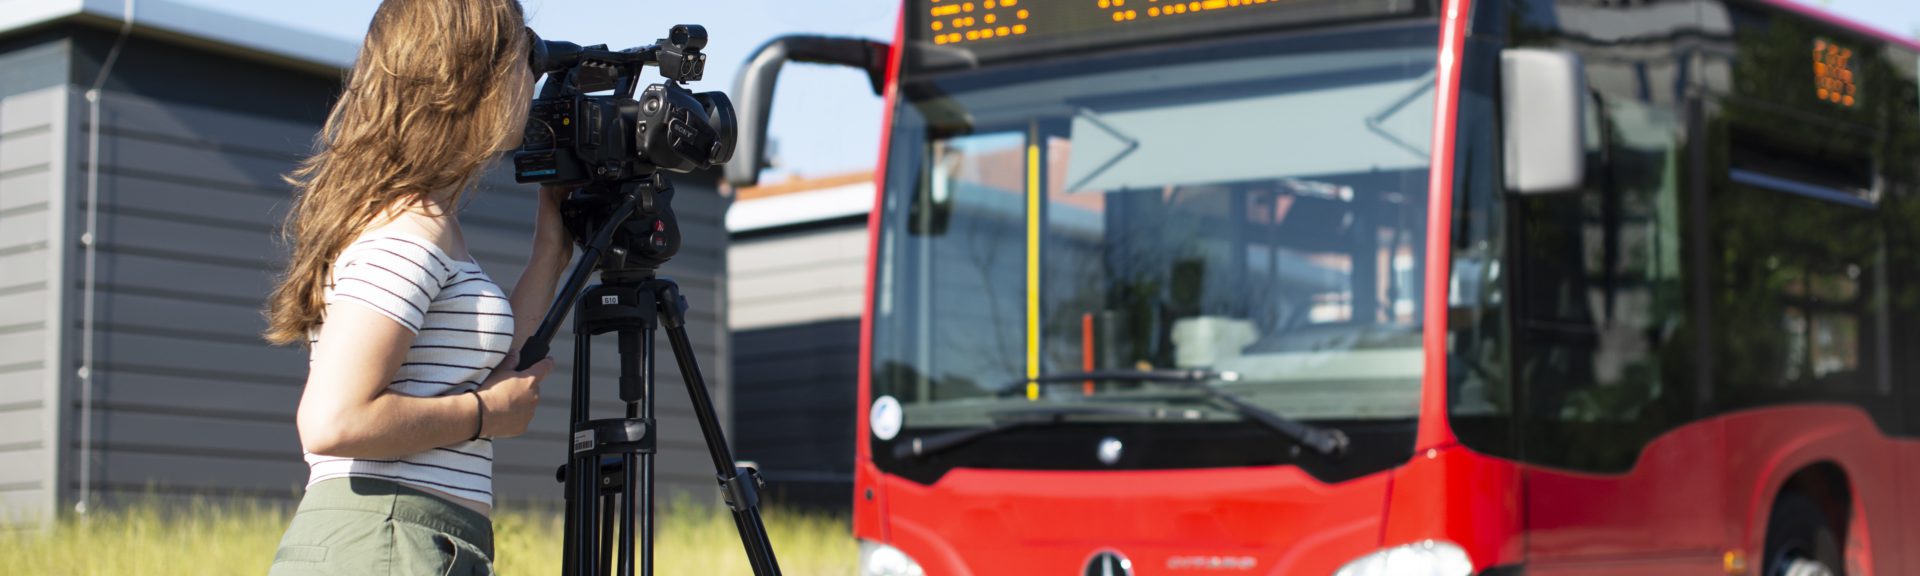 In der rechten Bildhälfte steht ein roter Bus aus dem Nahverkehr. Links steht sich eine junge Fraz mit langen braunen Haaren und sommerlicher Kleidung. Sie schaut durch den Sucher einer Kamera, die auf einem Stativ steht und zum Bus zeigt.